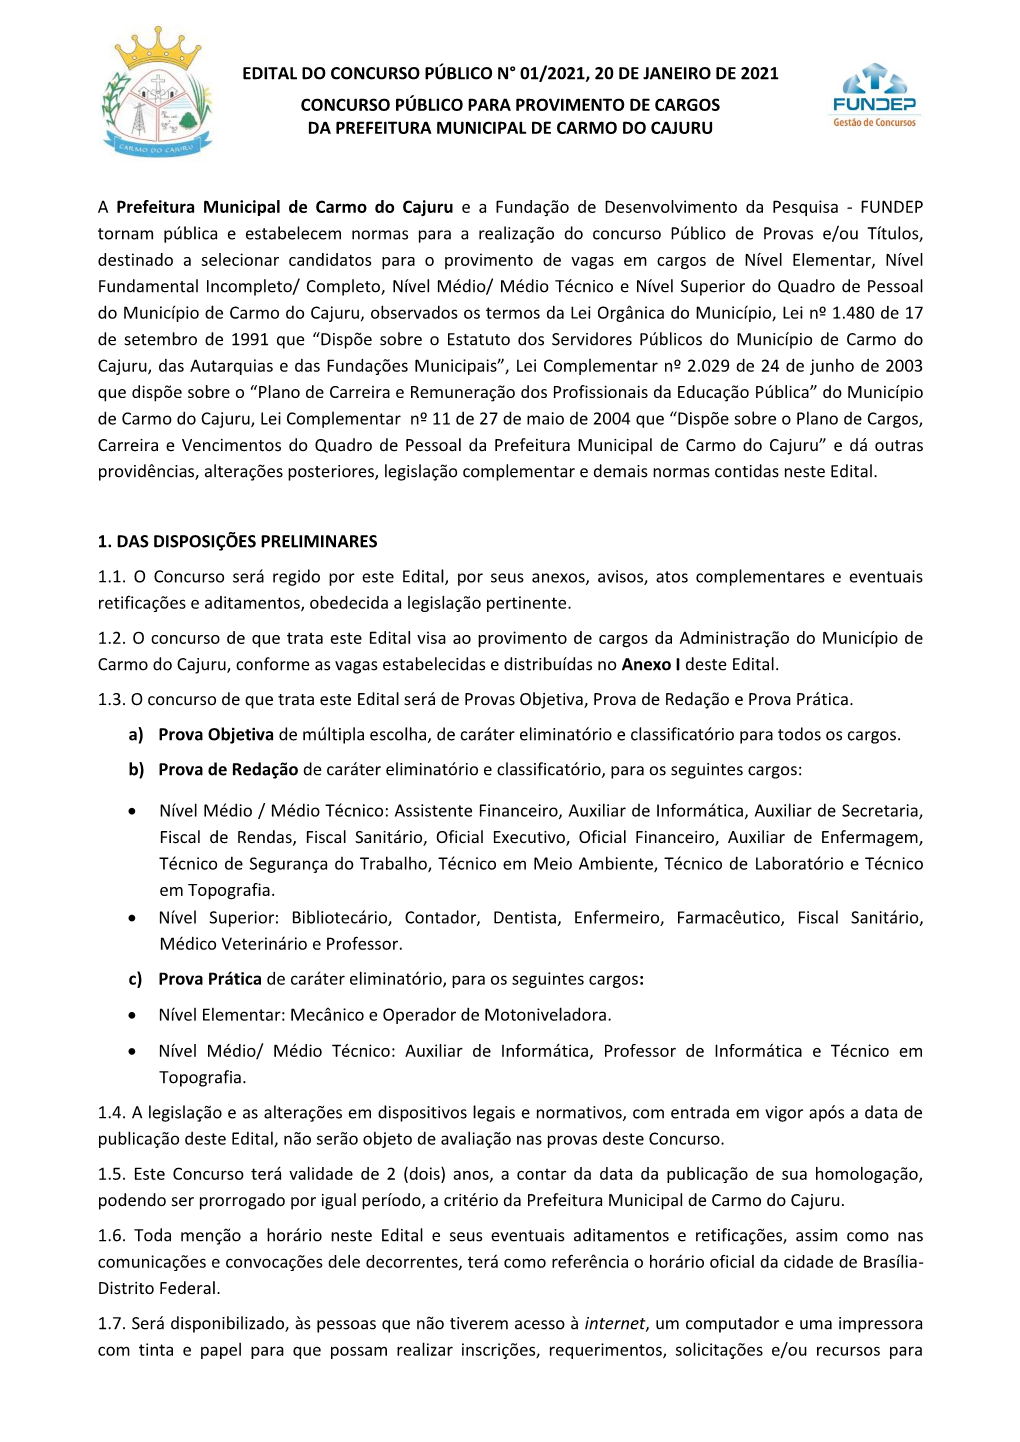 Edital Do Concurso Público N° 01/2021, 20 De Janeiro De 2021 Concurso Público Para Provimento De Cargos Da Prefeitura Municipal De Carmo Do Cajuru